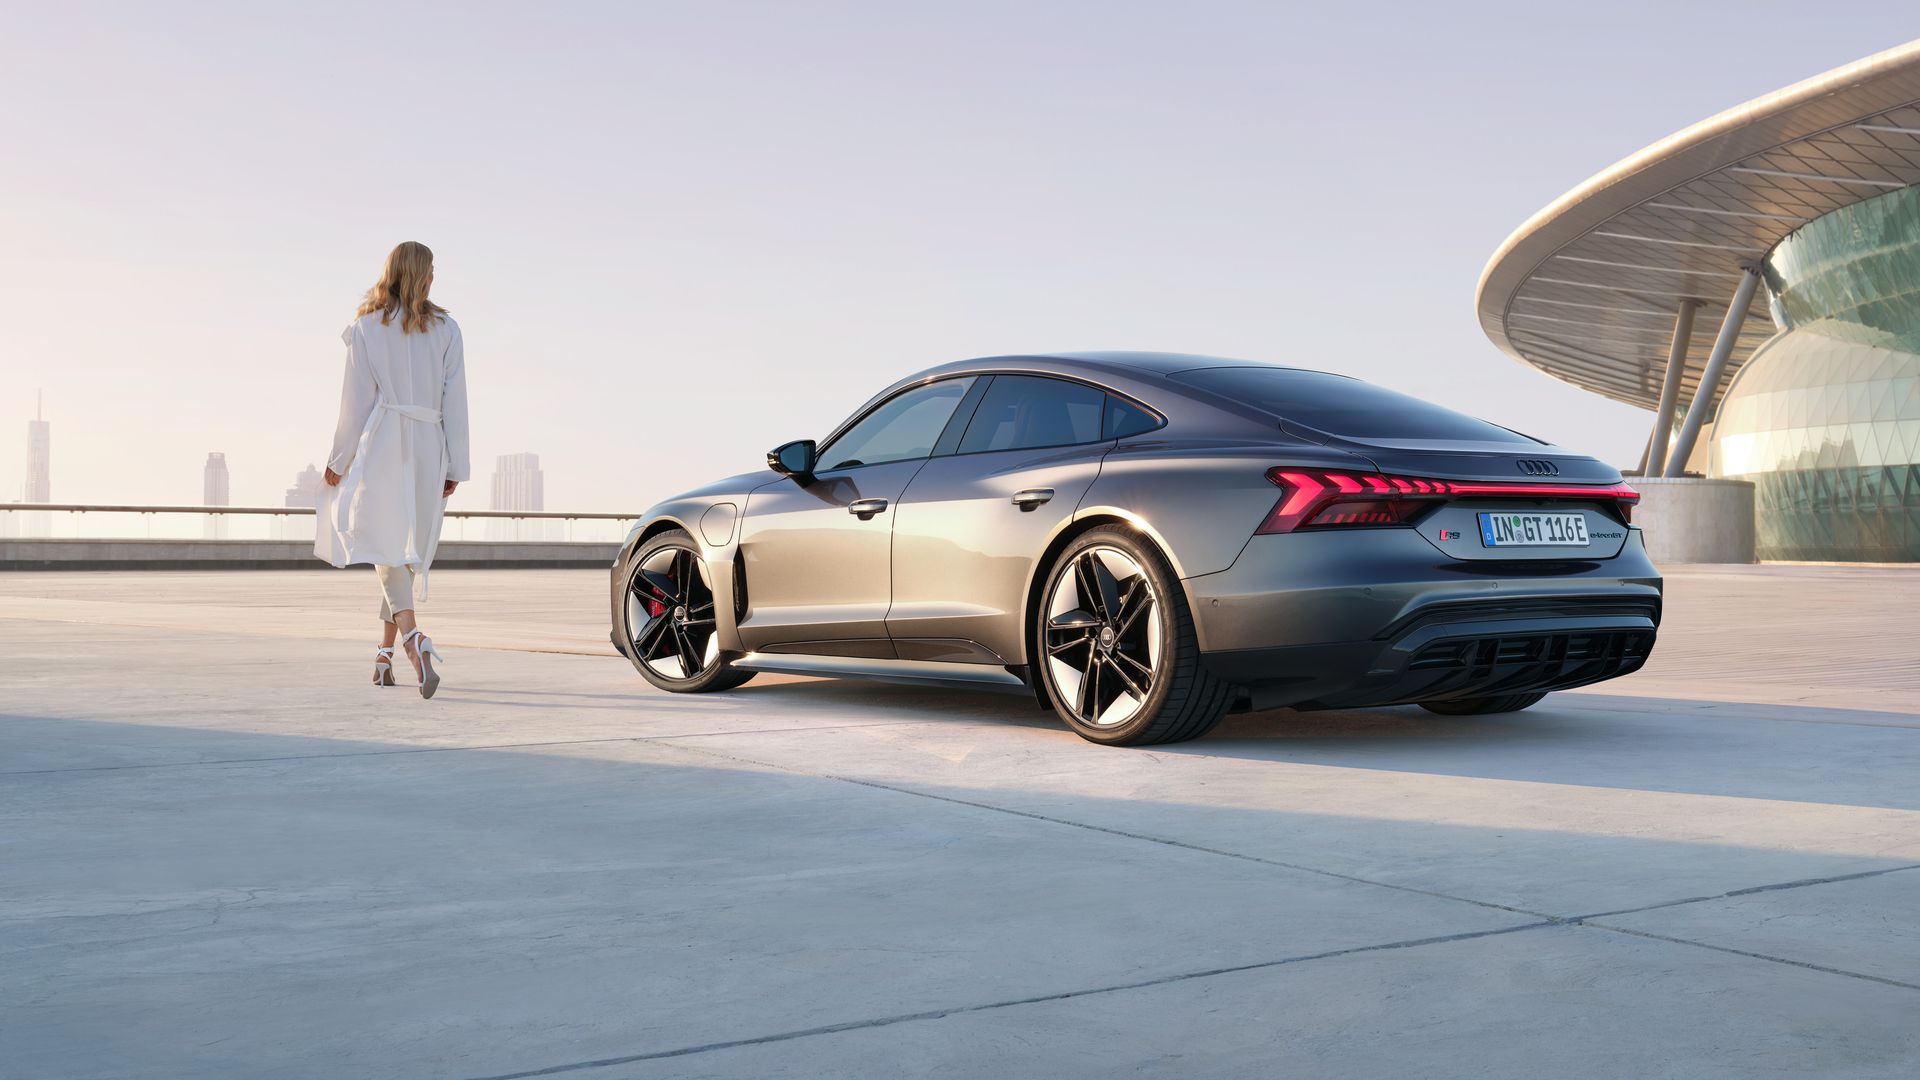 Elegante Frau neben Sportwagen Audi RS e-tron GT auf einer Betonfläche vor futuristischer Architektur.